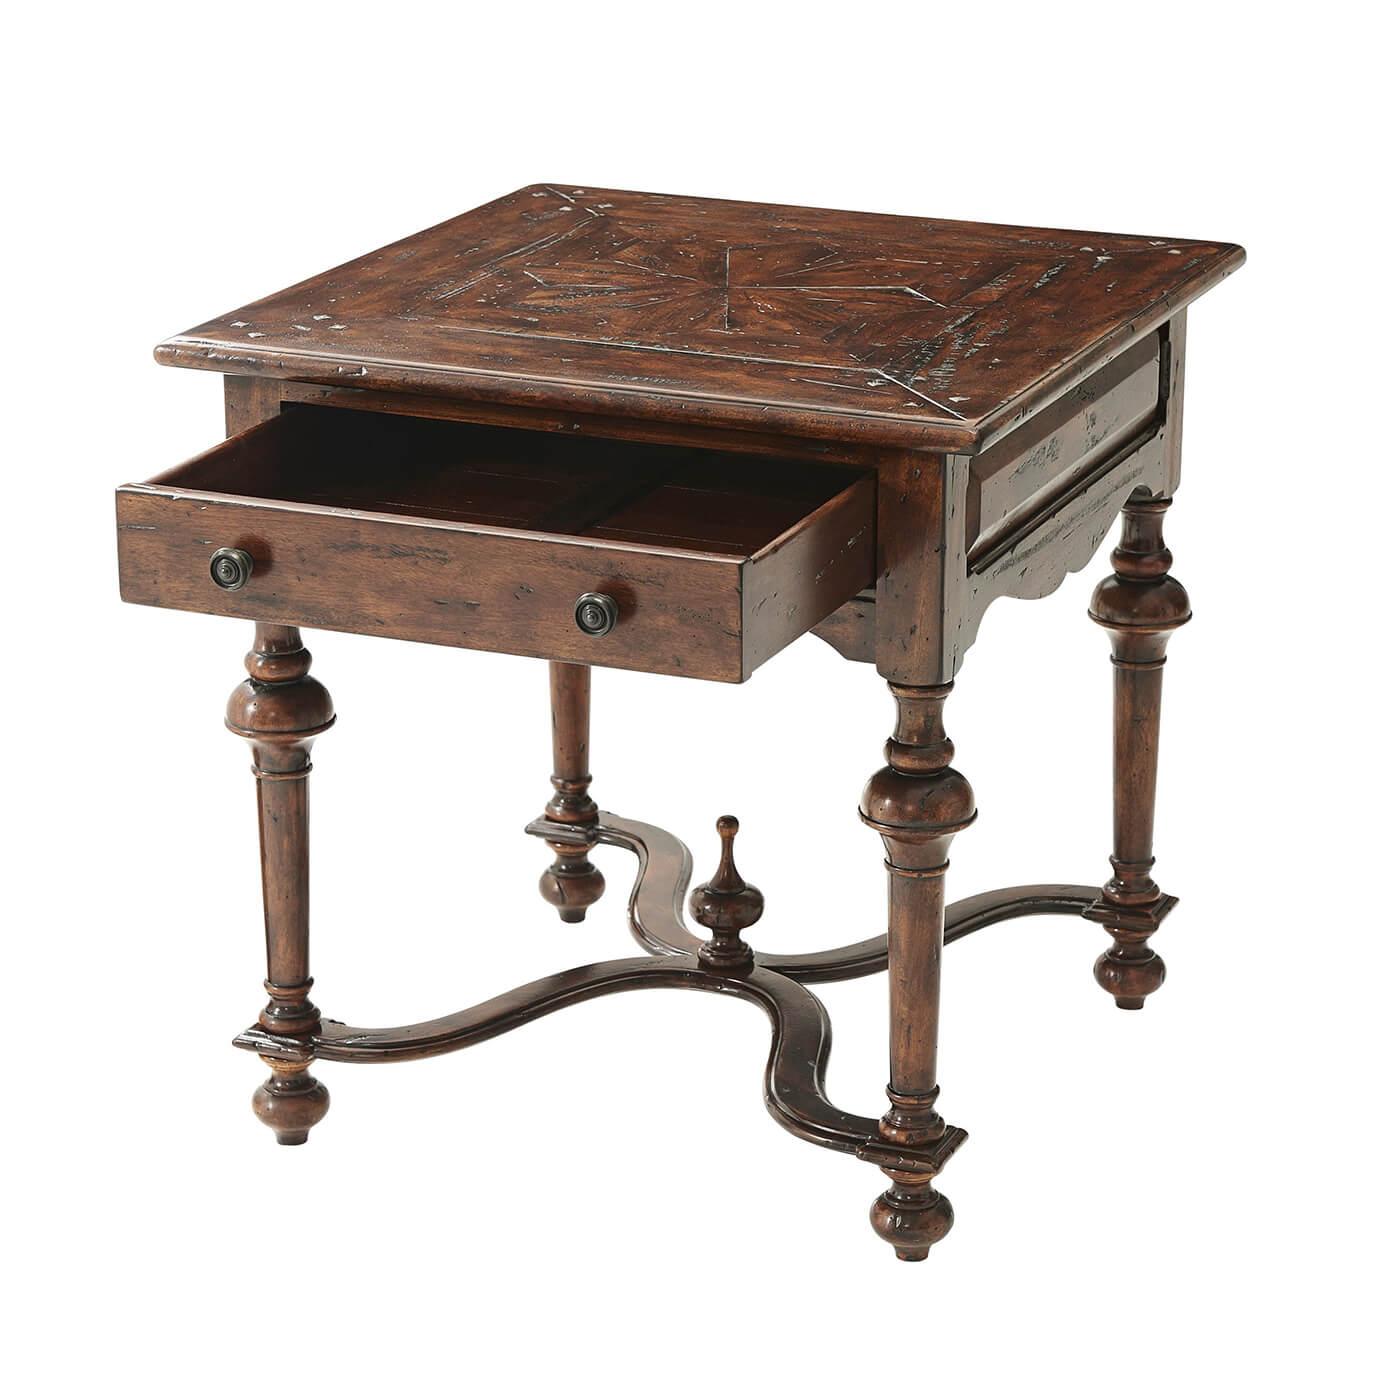 Table d'appoint en bois antique de style William and Mary, le plateau carré en parquet au-dessus d'un tiroir, et les pieds tournés en forme de cloche reliés par une entretoise serpentine en forme de 